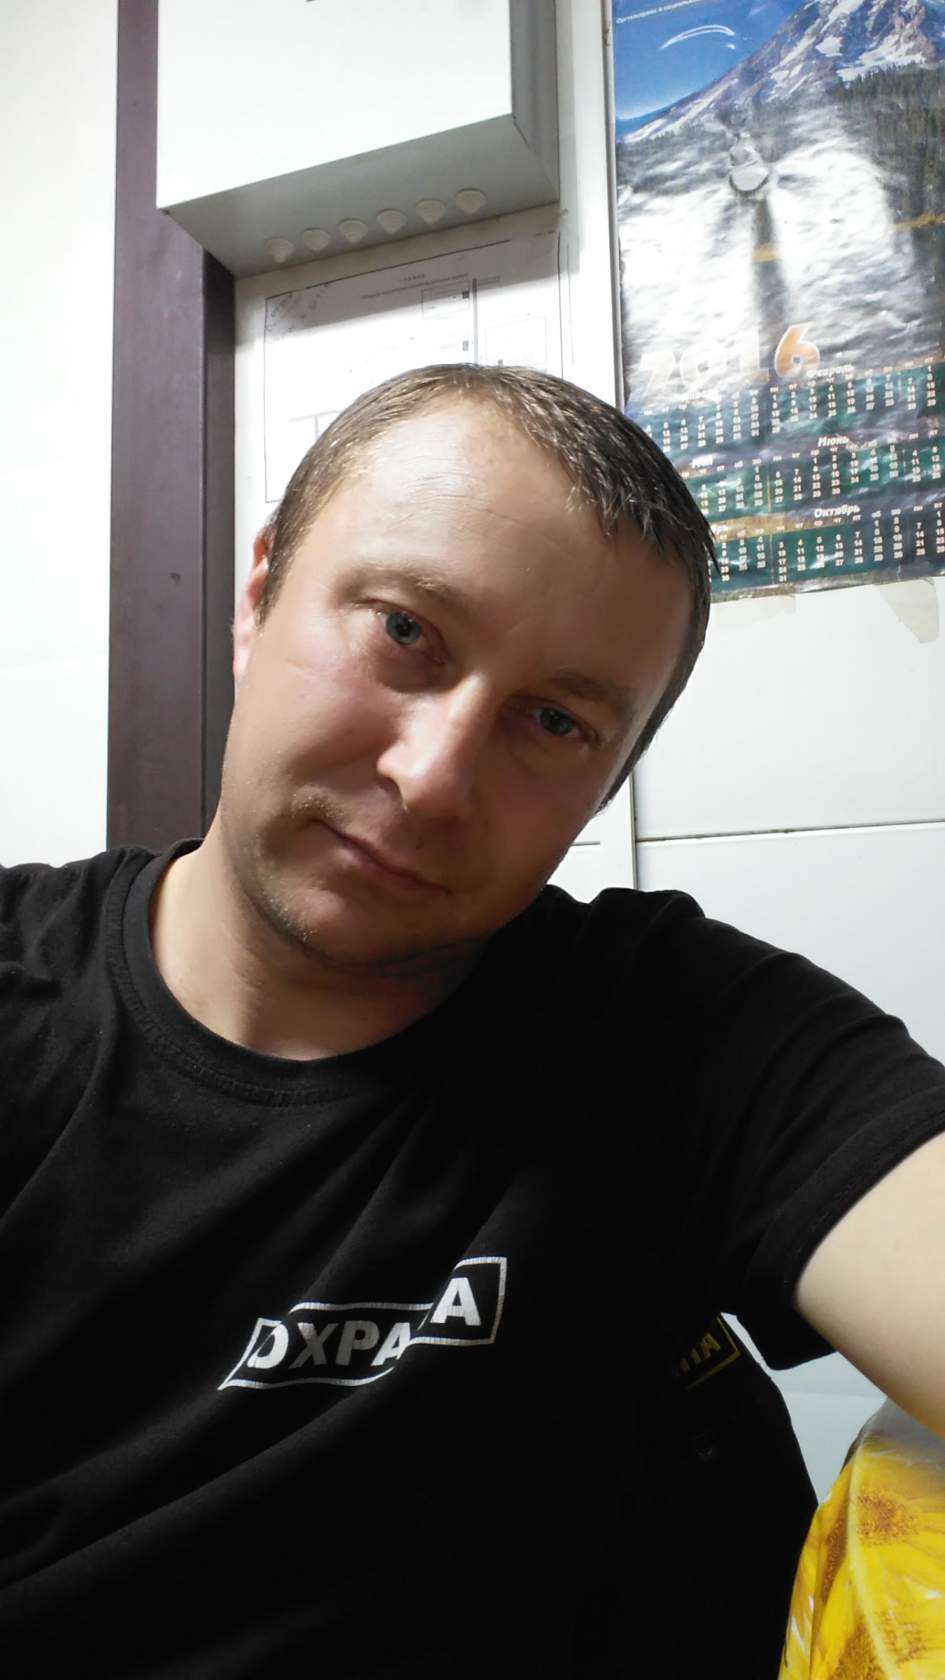 Андрей Федосеев